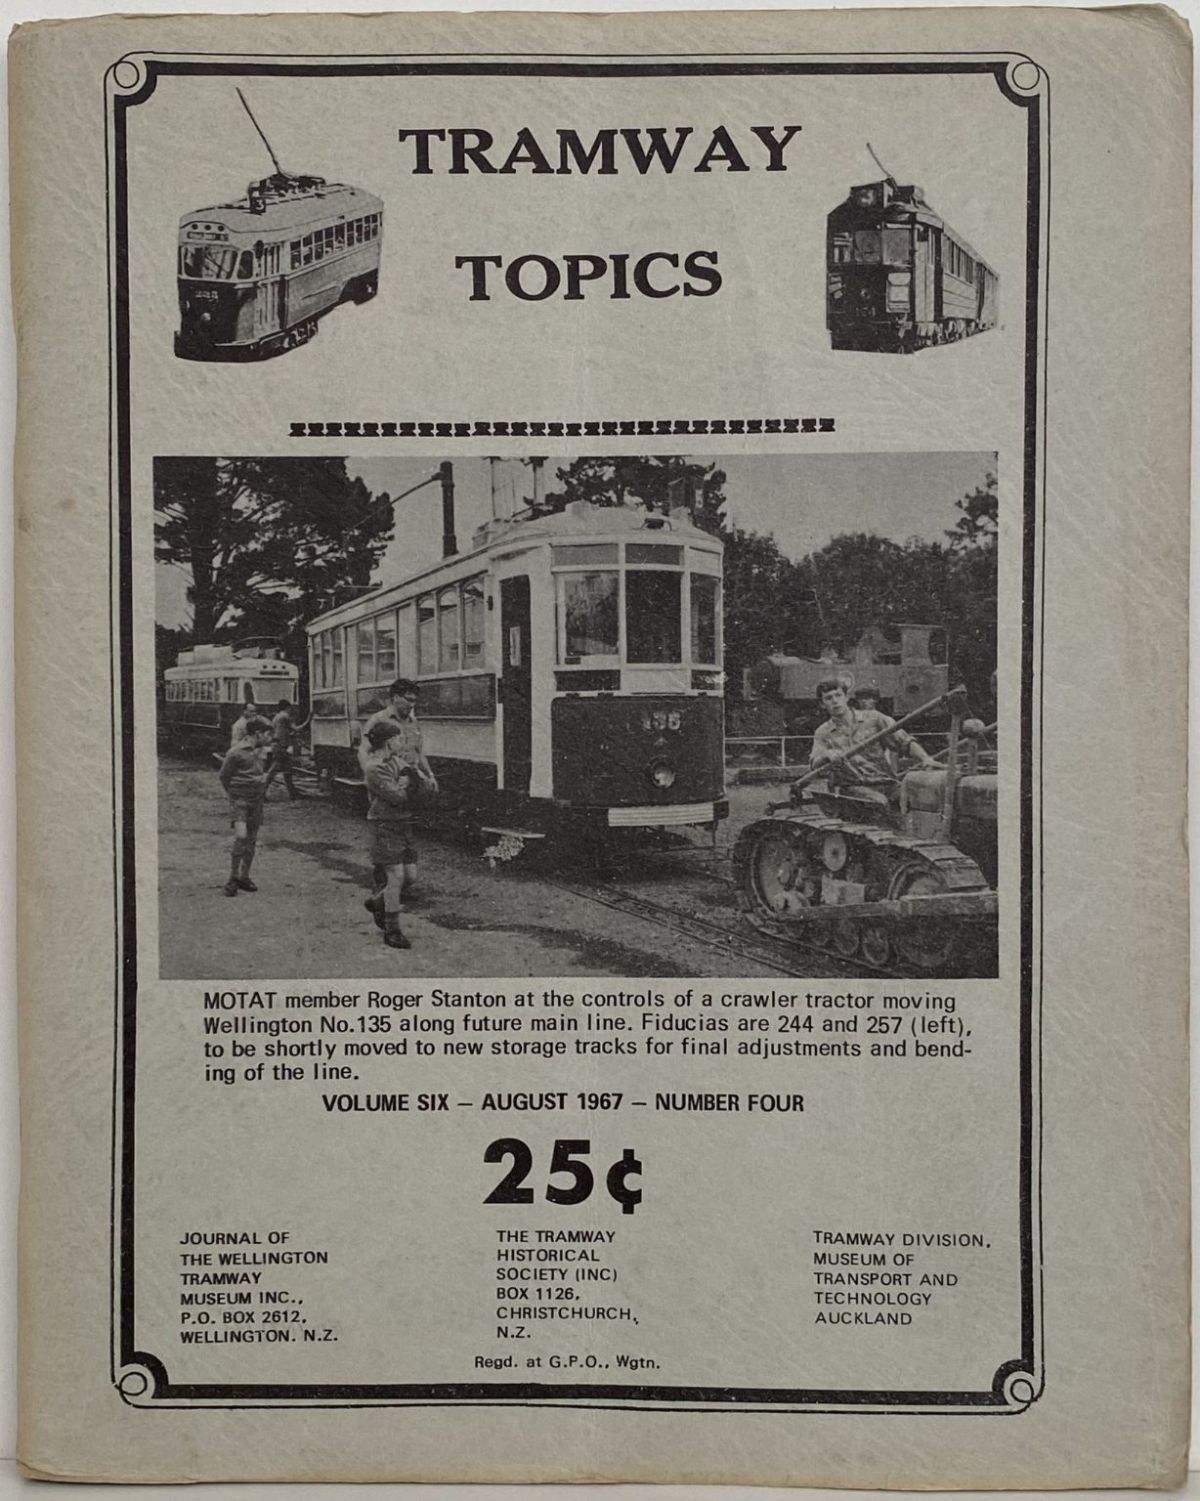 TRAMWAY TOPICS Vol 6, No 4, August 1967